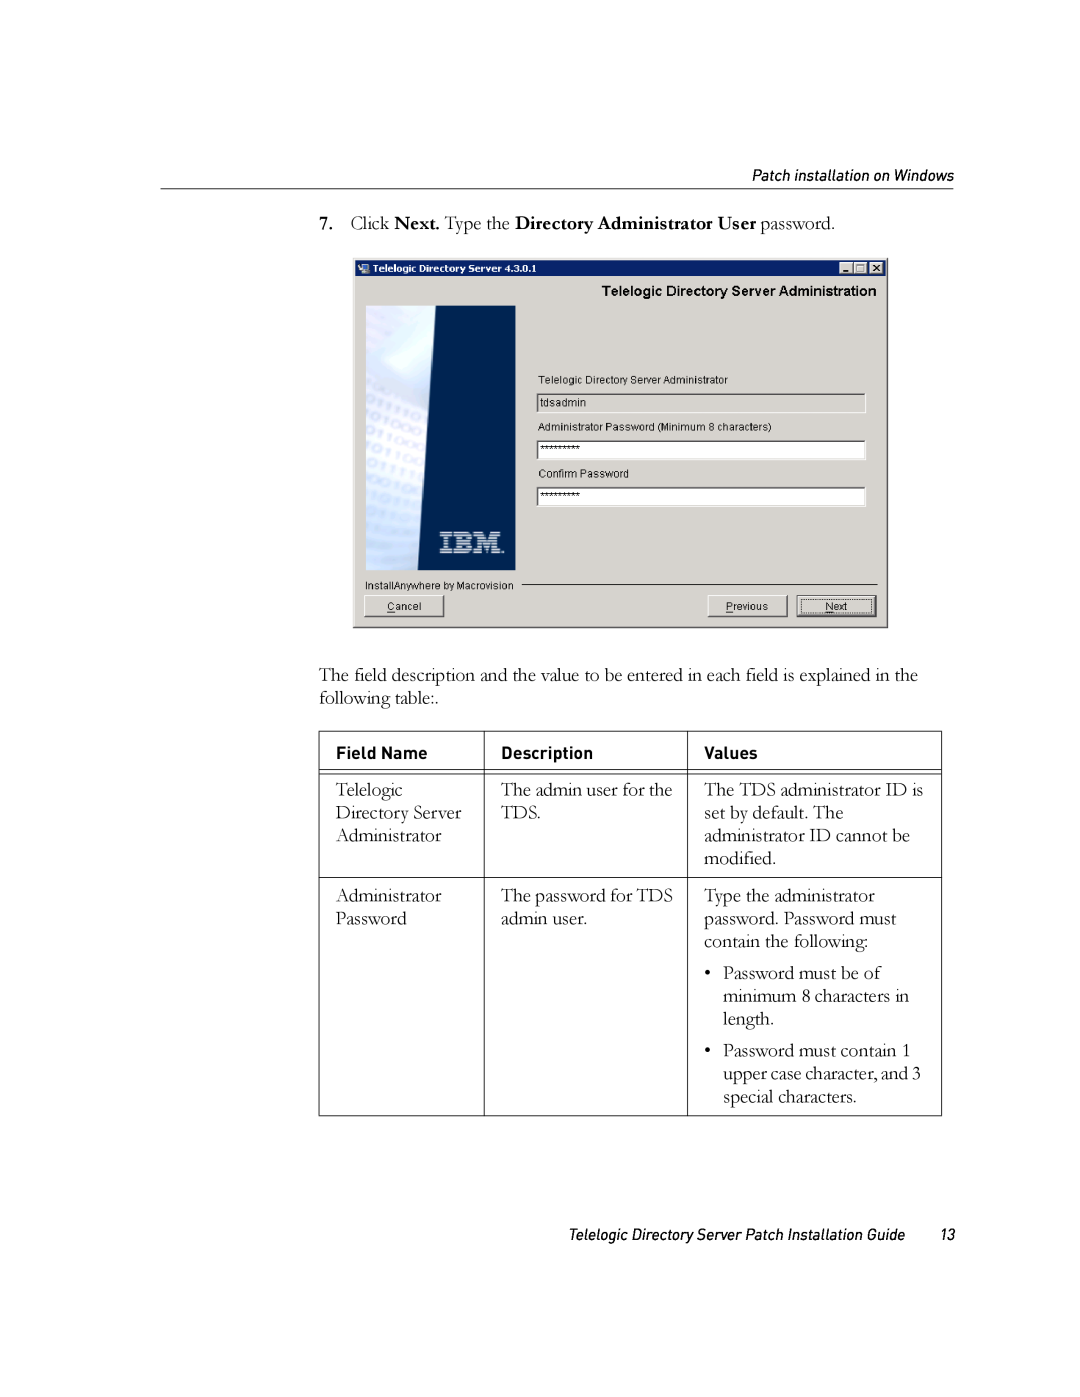 IBM Telelogic Directory Server manual 